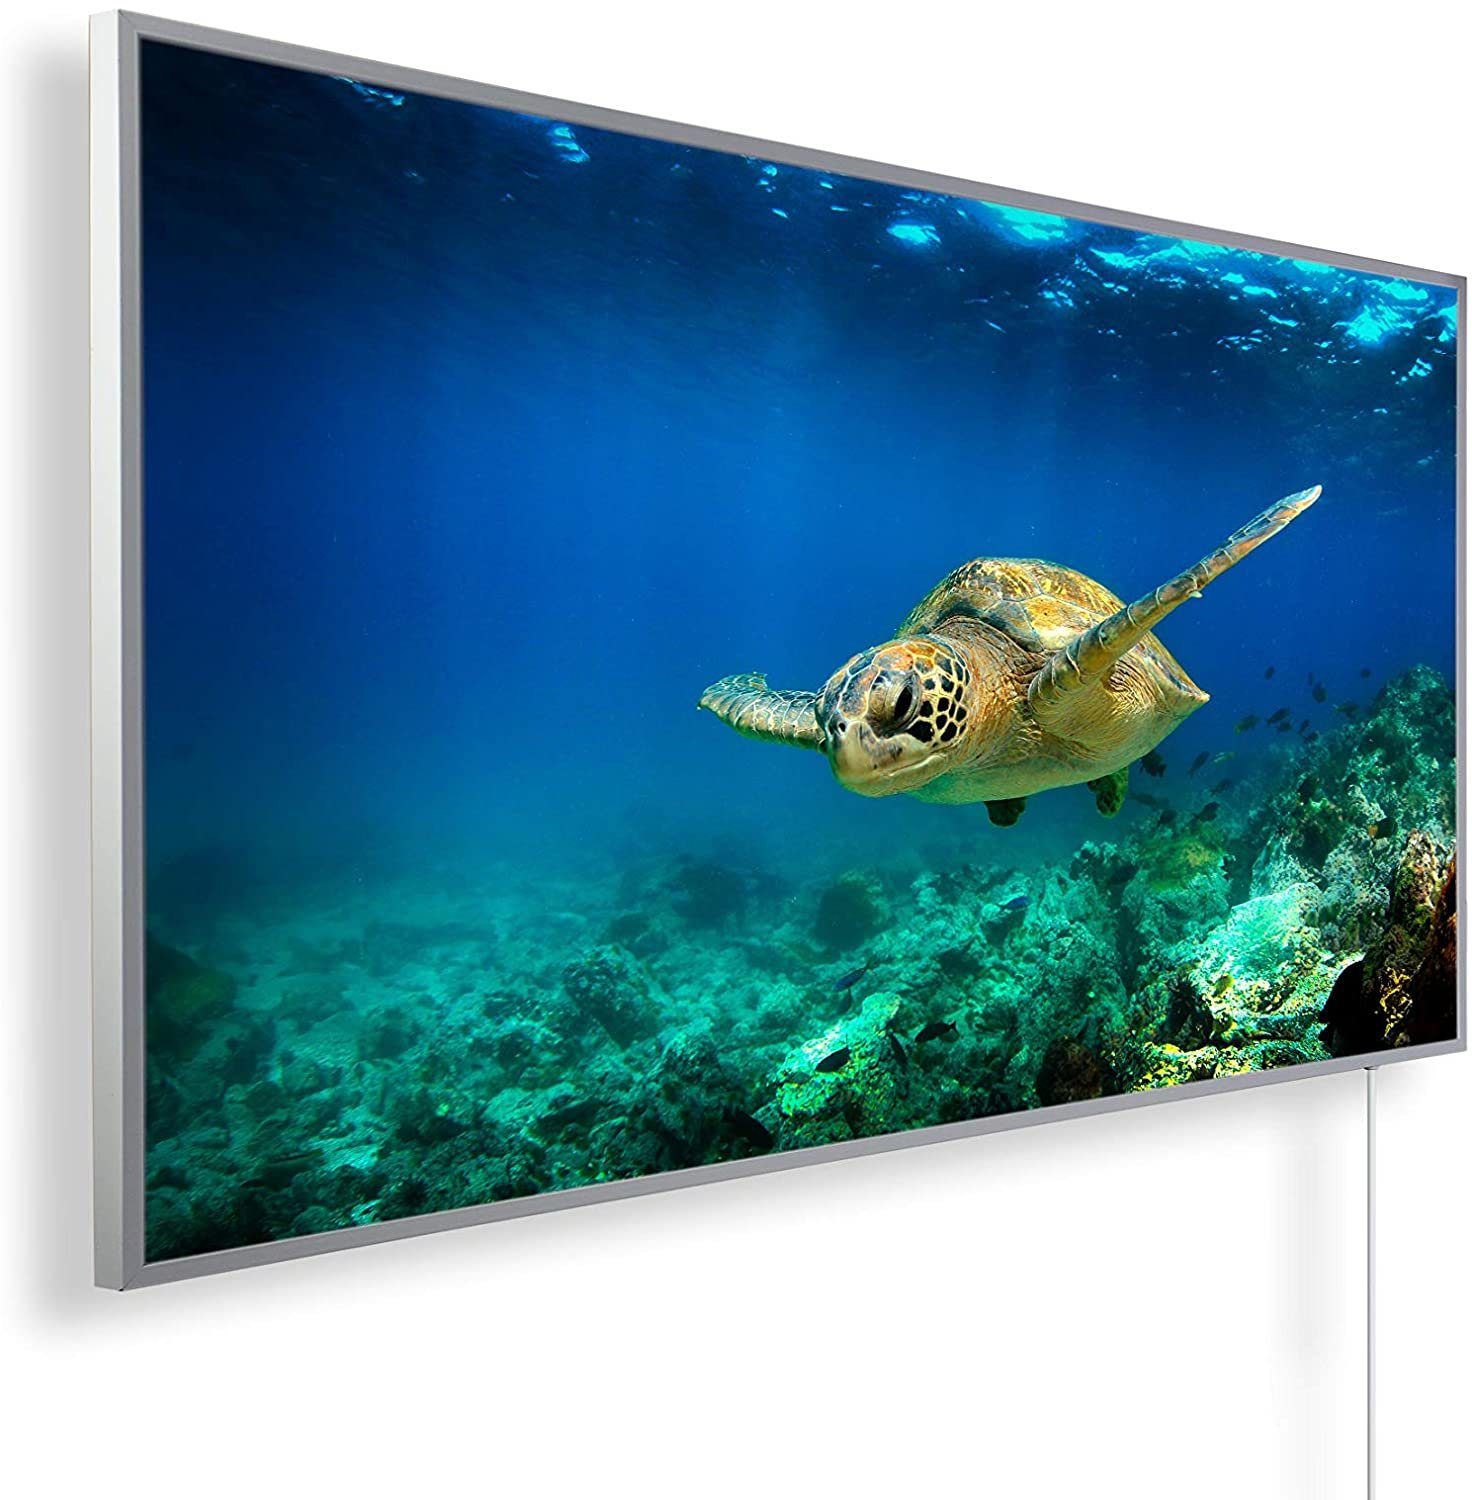 Schildkröte in Bild-Serie Könighaus 1000W angenehme Smart Unterwasser Made Home Smart, Infrarotheizung Strahlungswärme, Germany,